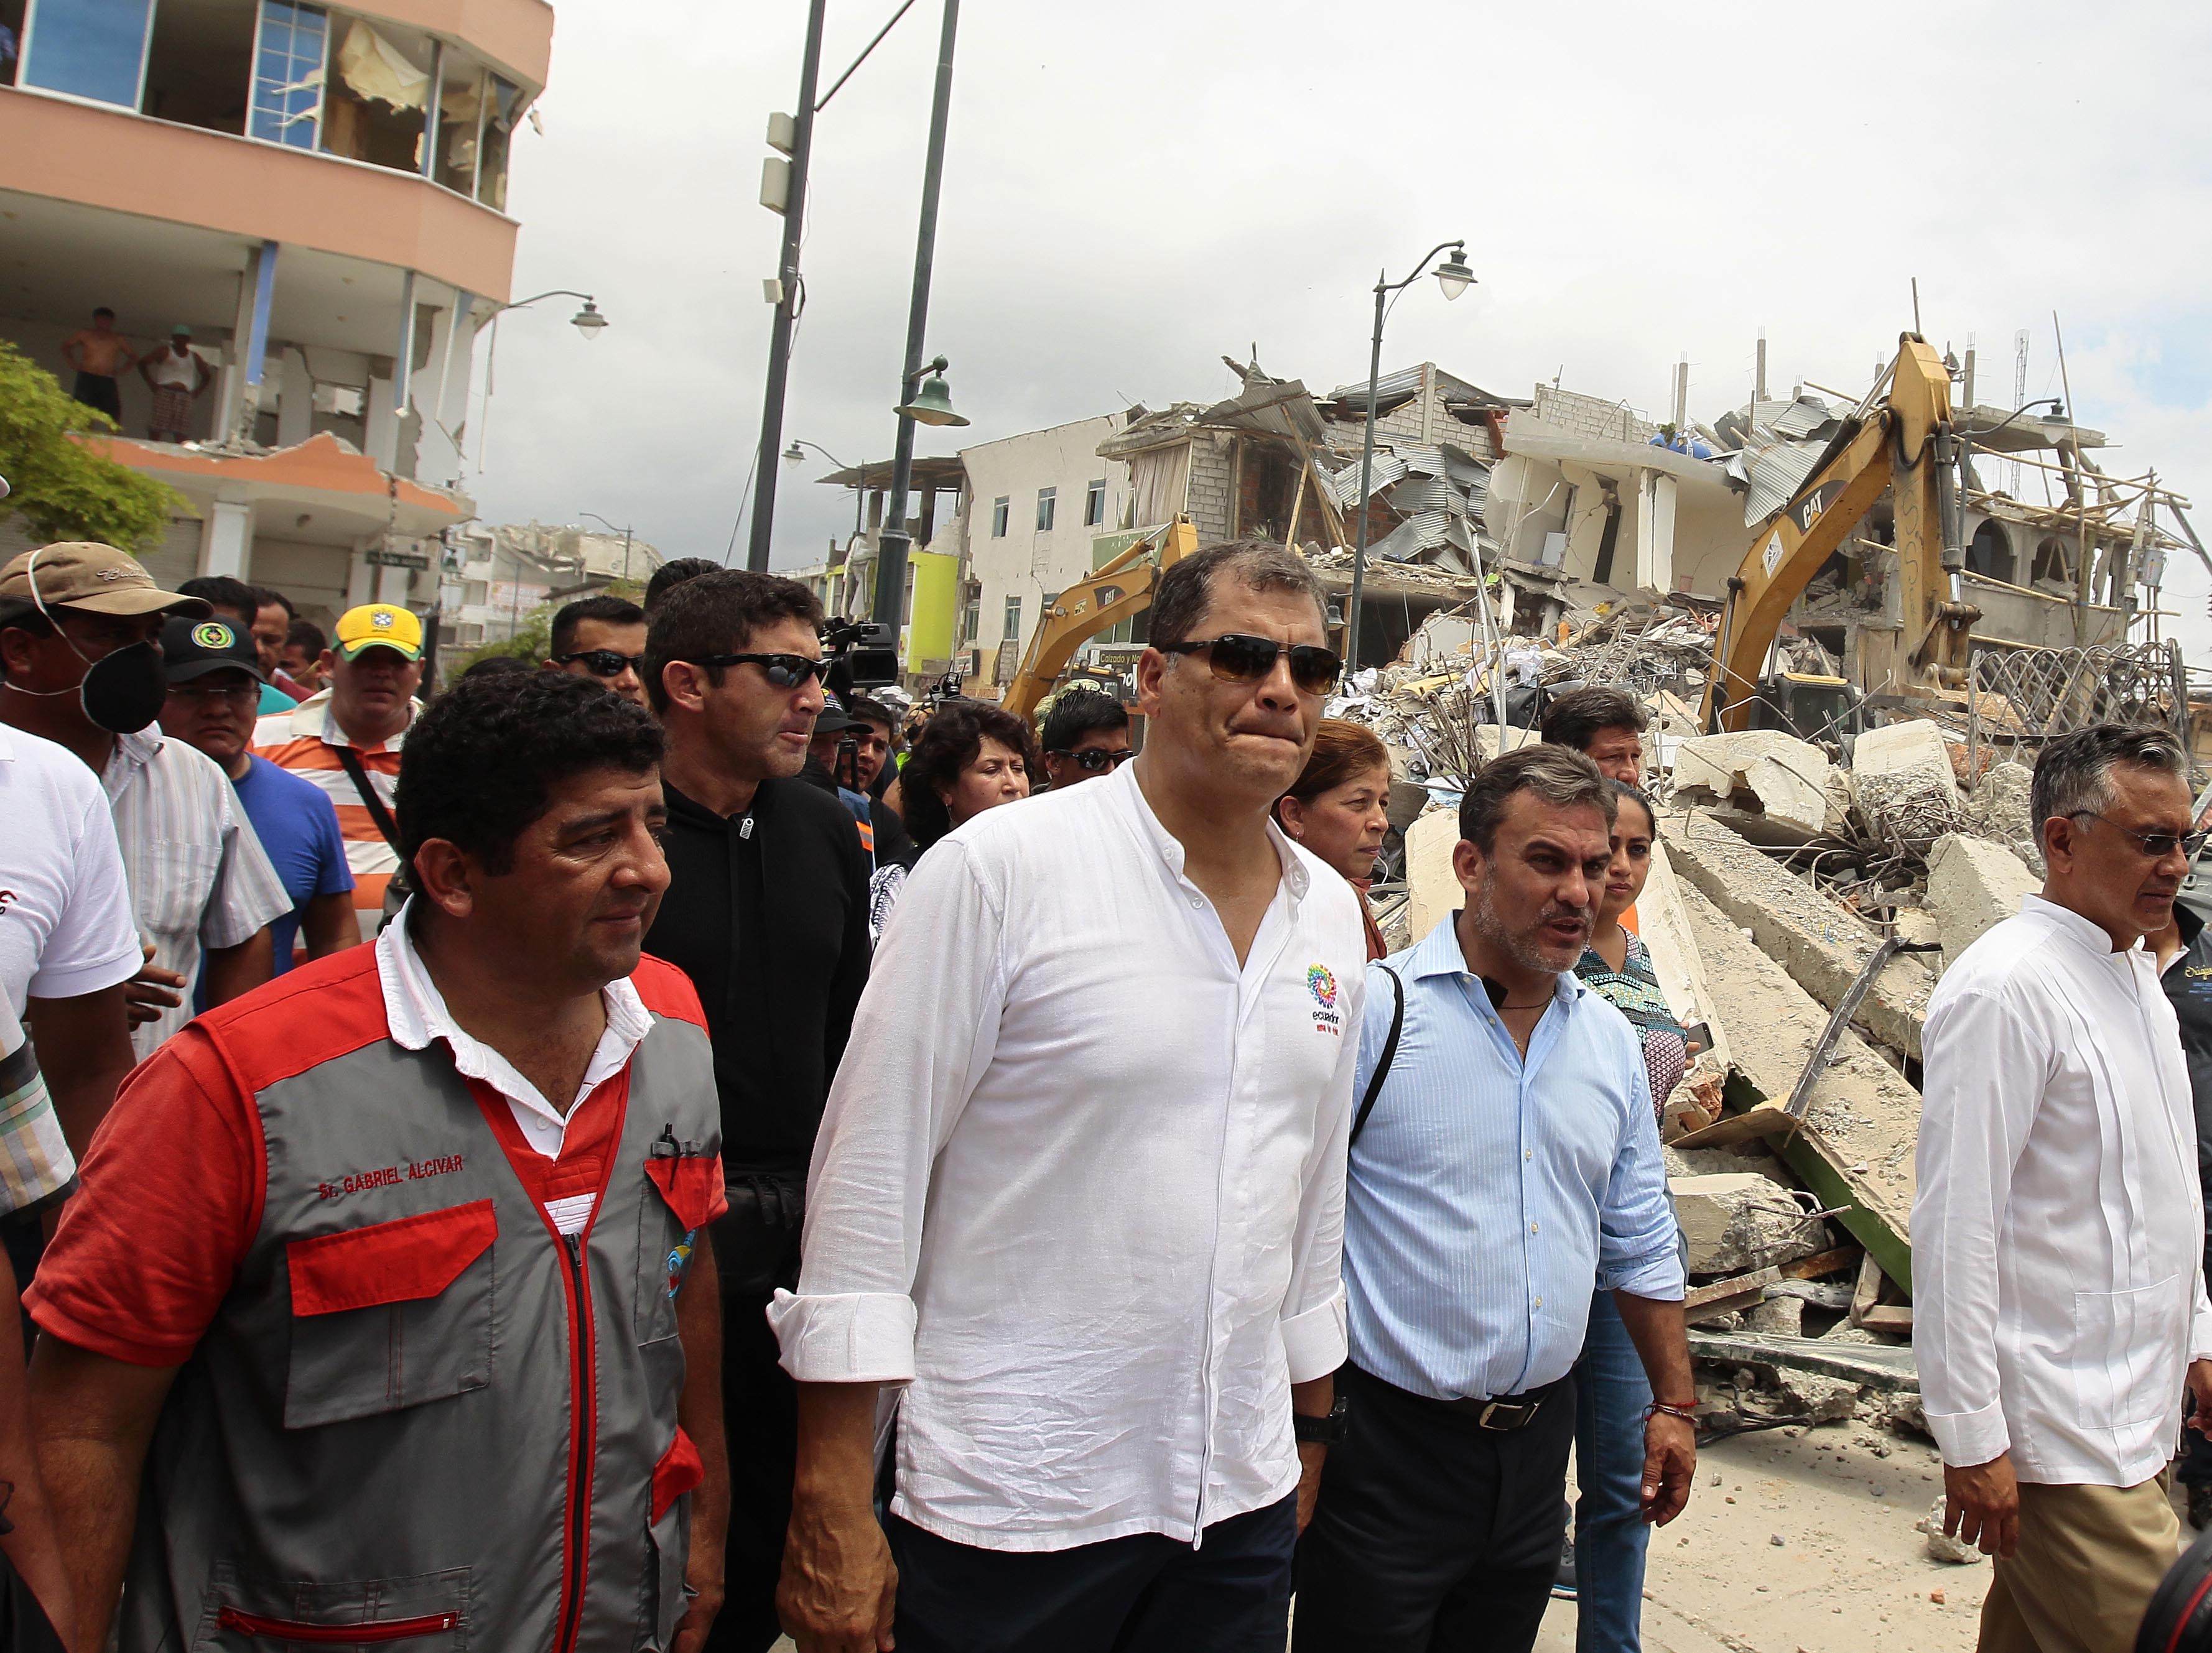 La reconstrucción total de las zonas afectadas por el terremoto del pasado 16 de abril en Ecuador tomará al menos tres años.